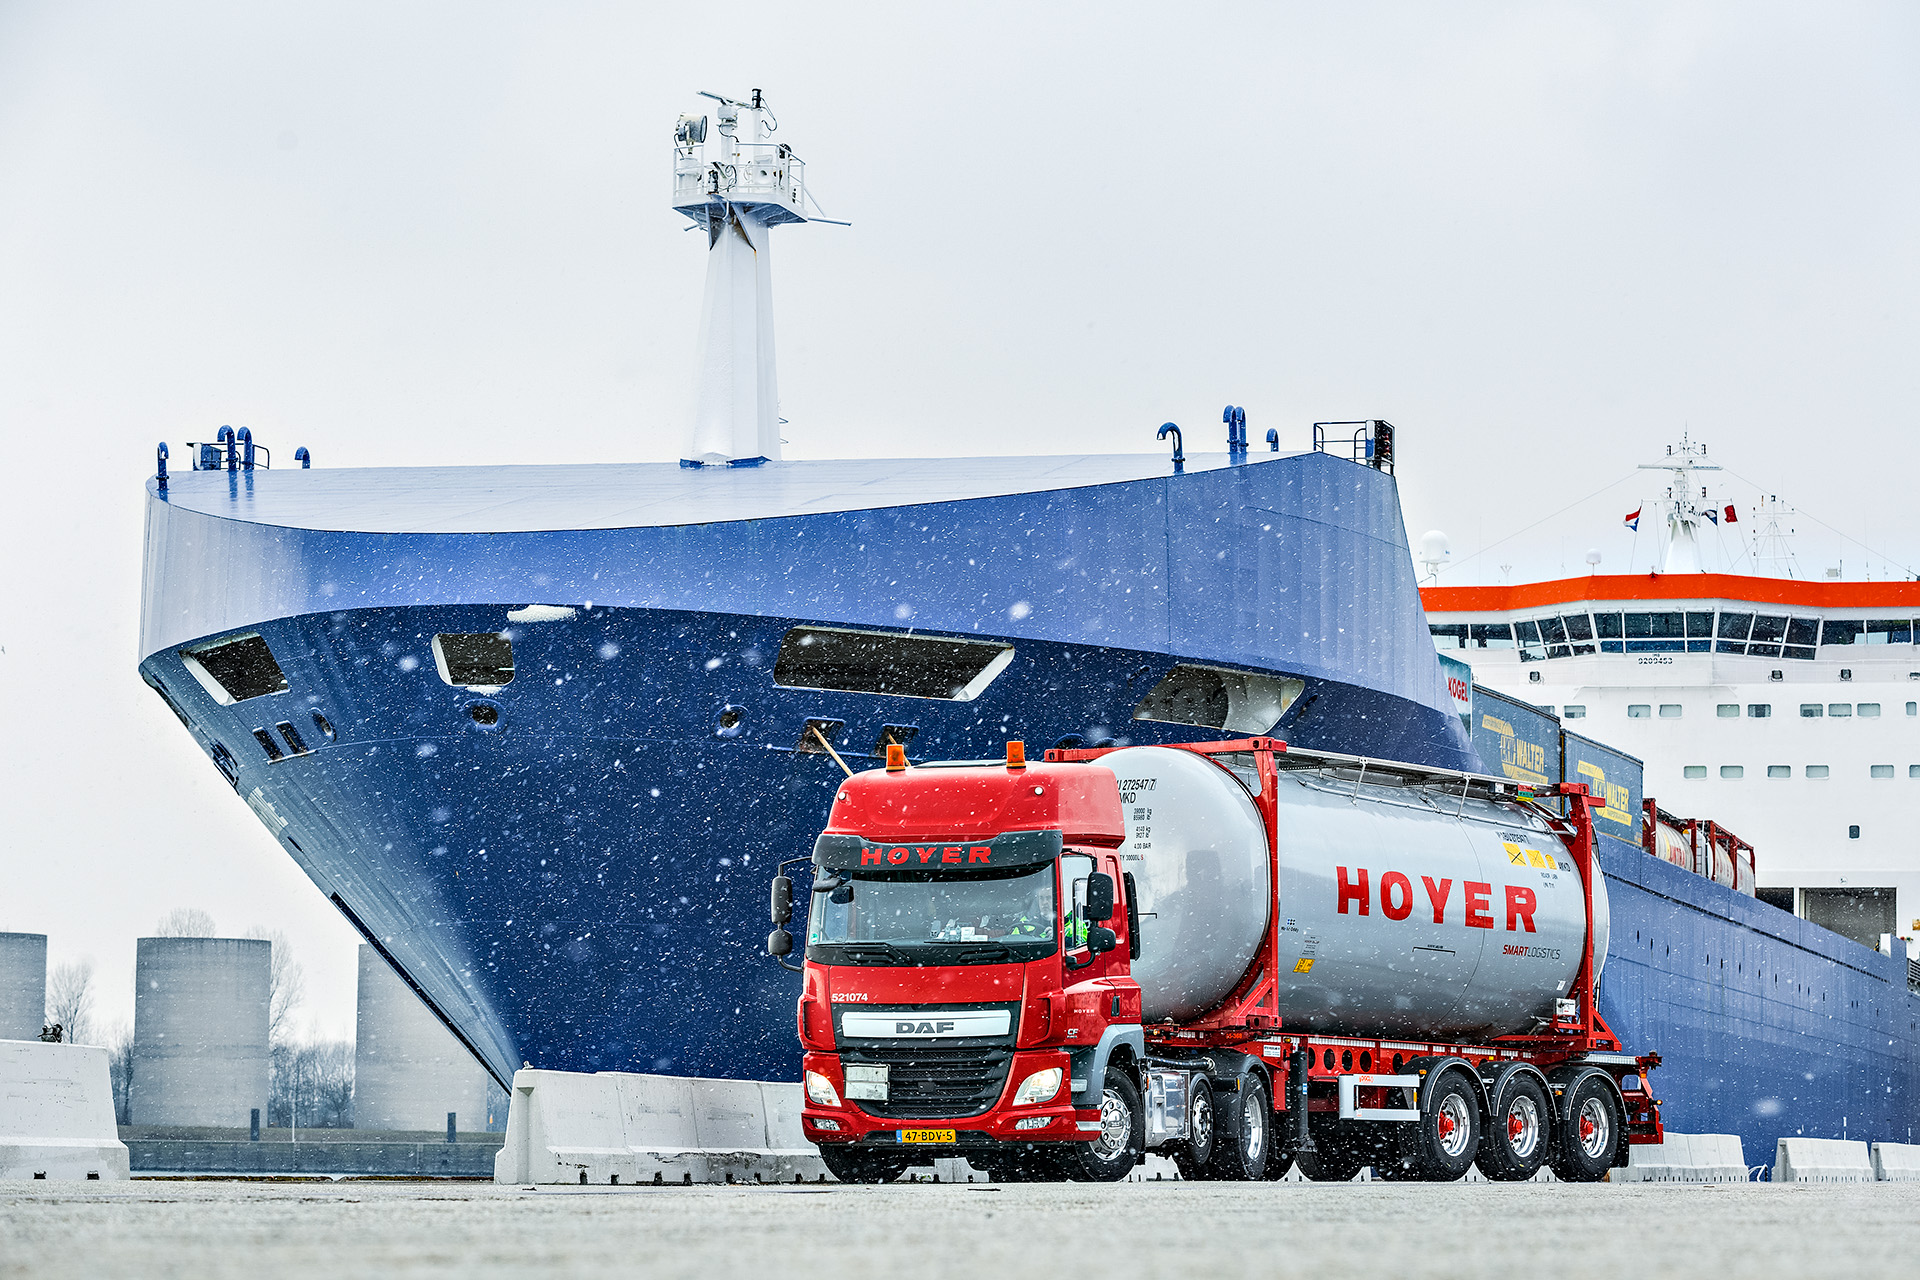 HOYER Lkw mit Chemie-Tankcontainer smart logistics vor einem Schiff. Es schneit.